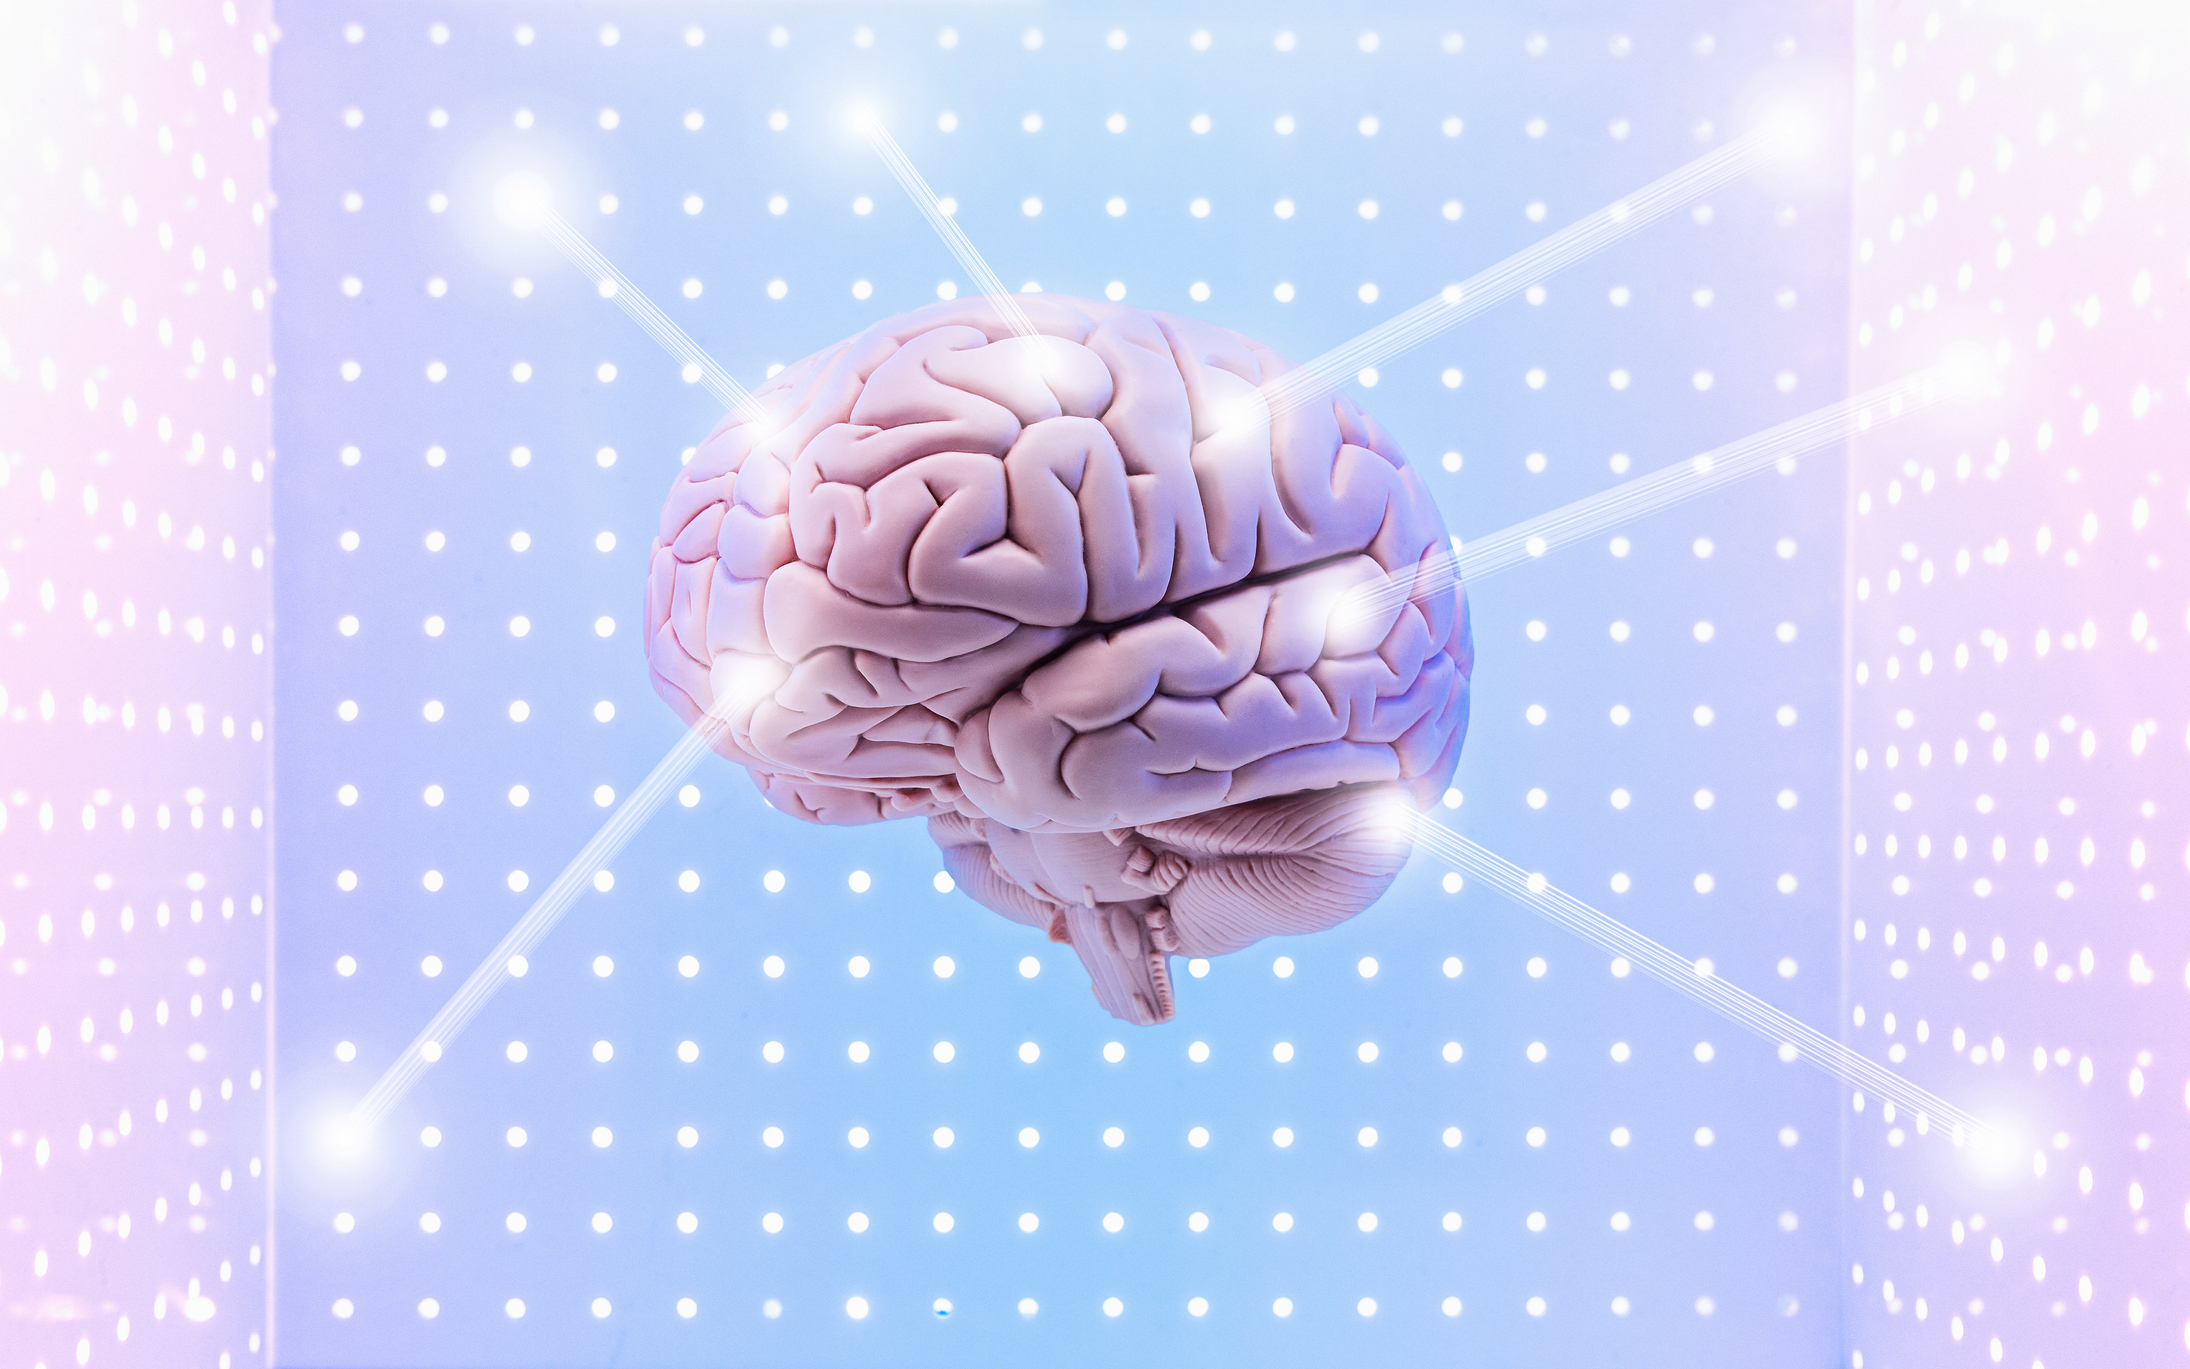 "Hackea tu mente", de la especialista en neurociencia Millie Gianella Bourdieu, es una práctica guía para "entrenar el cerebro y lograr todo lo que te propongas".  